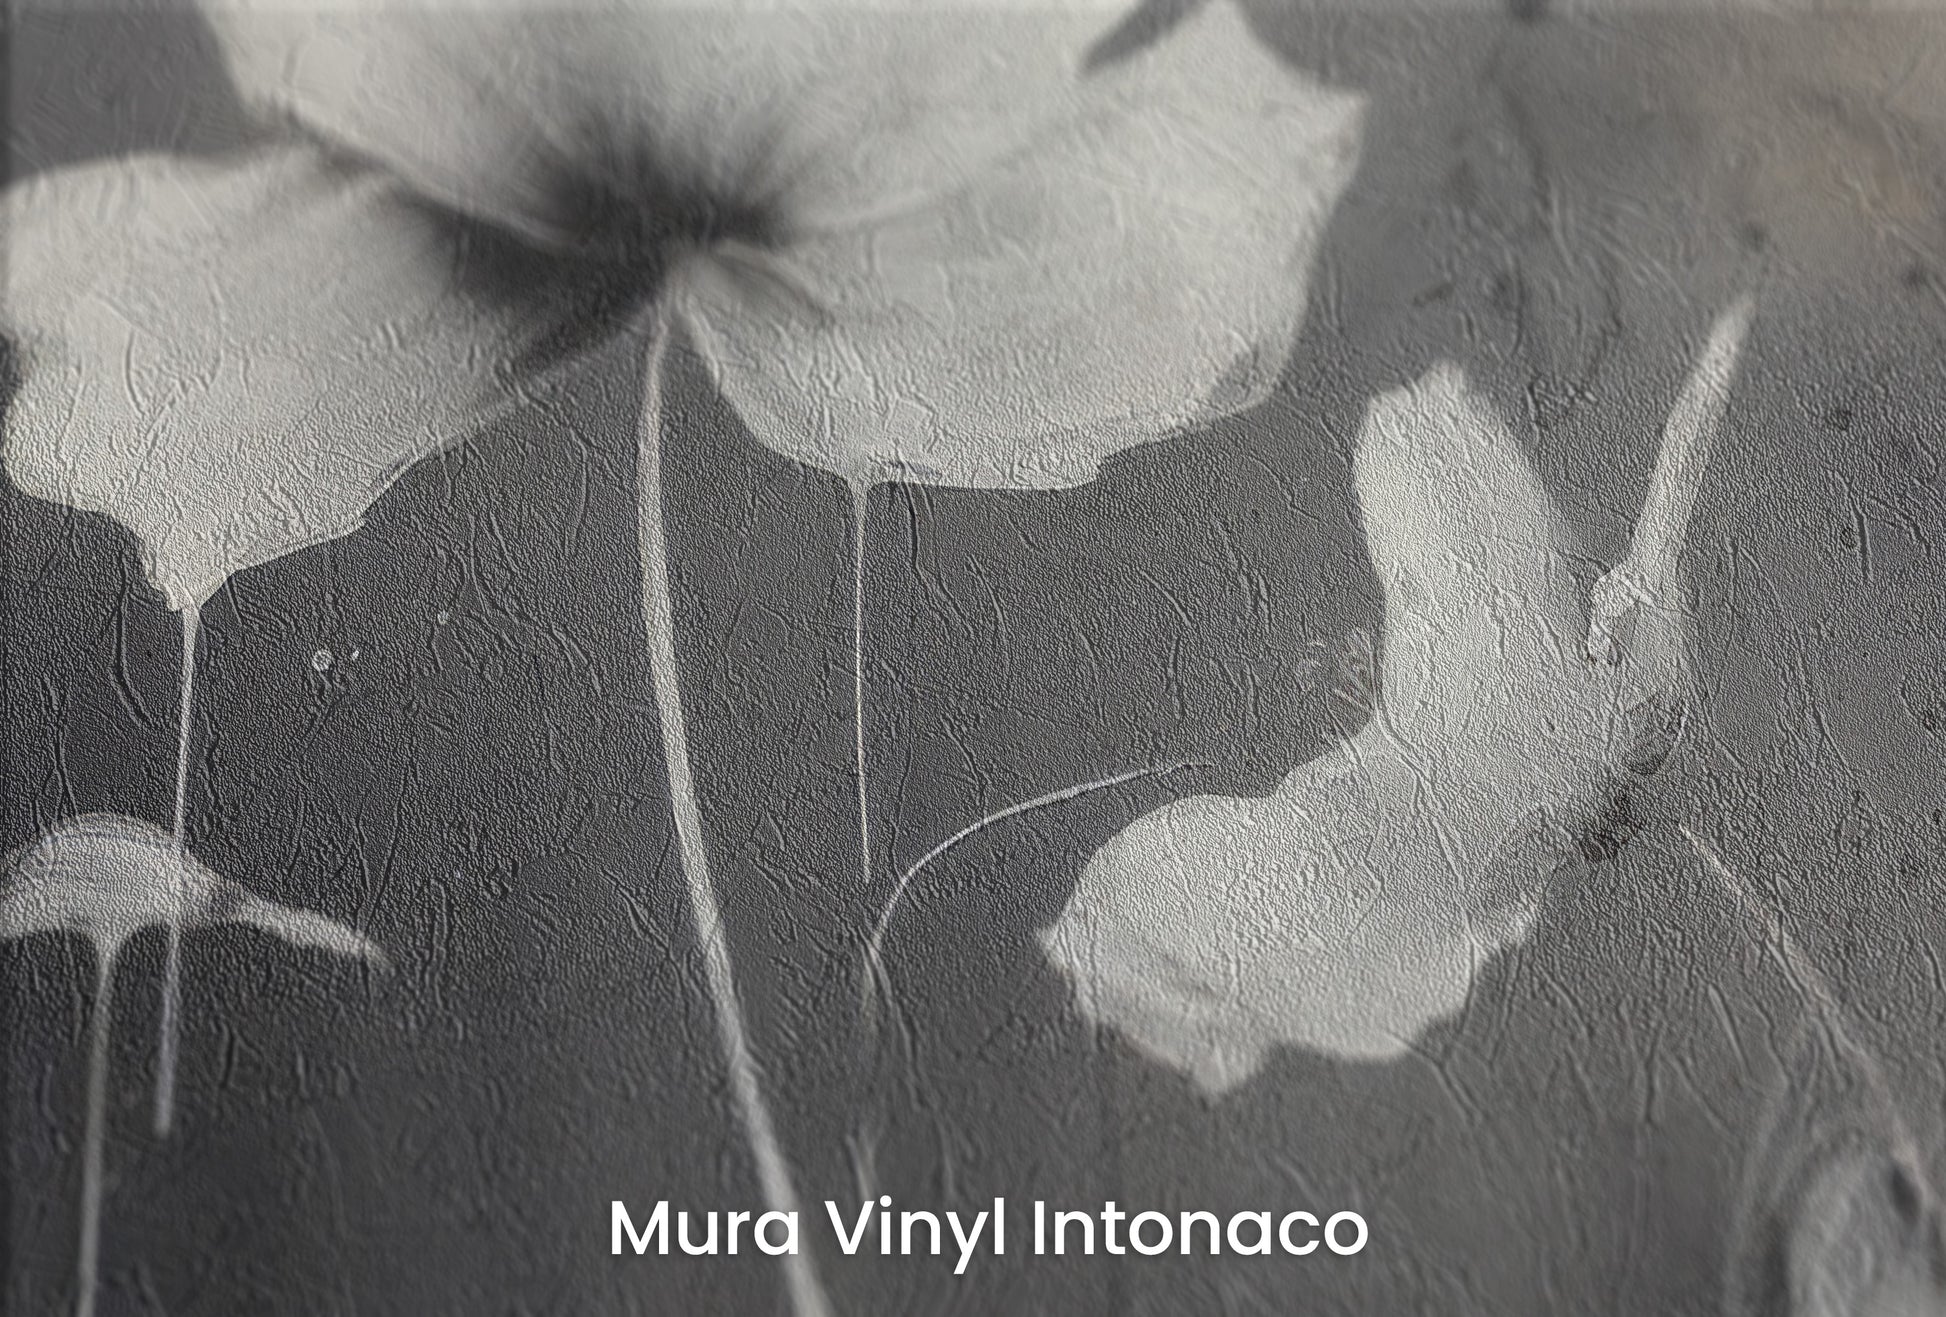 Zbliżenie na artystyczną fototapetę o nazwie MONOCHROME MEADOW na podłożu Mura Vinyl Intonaco - struktura tartego tynku.